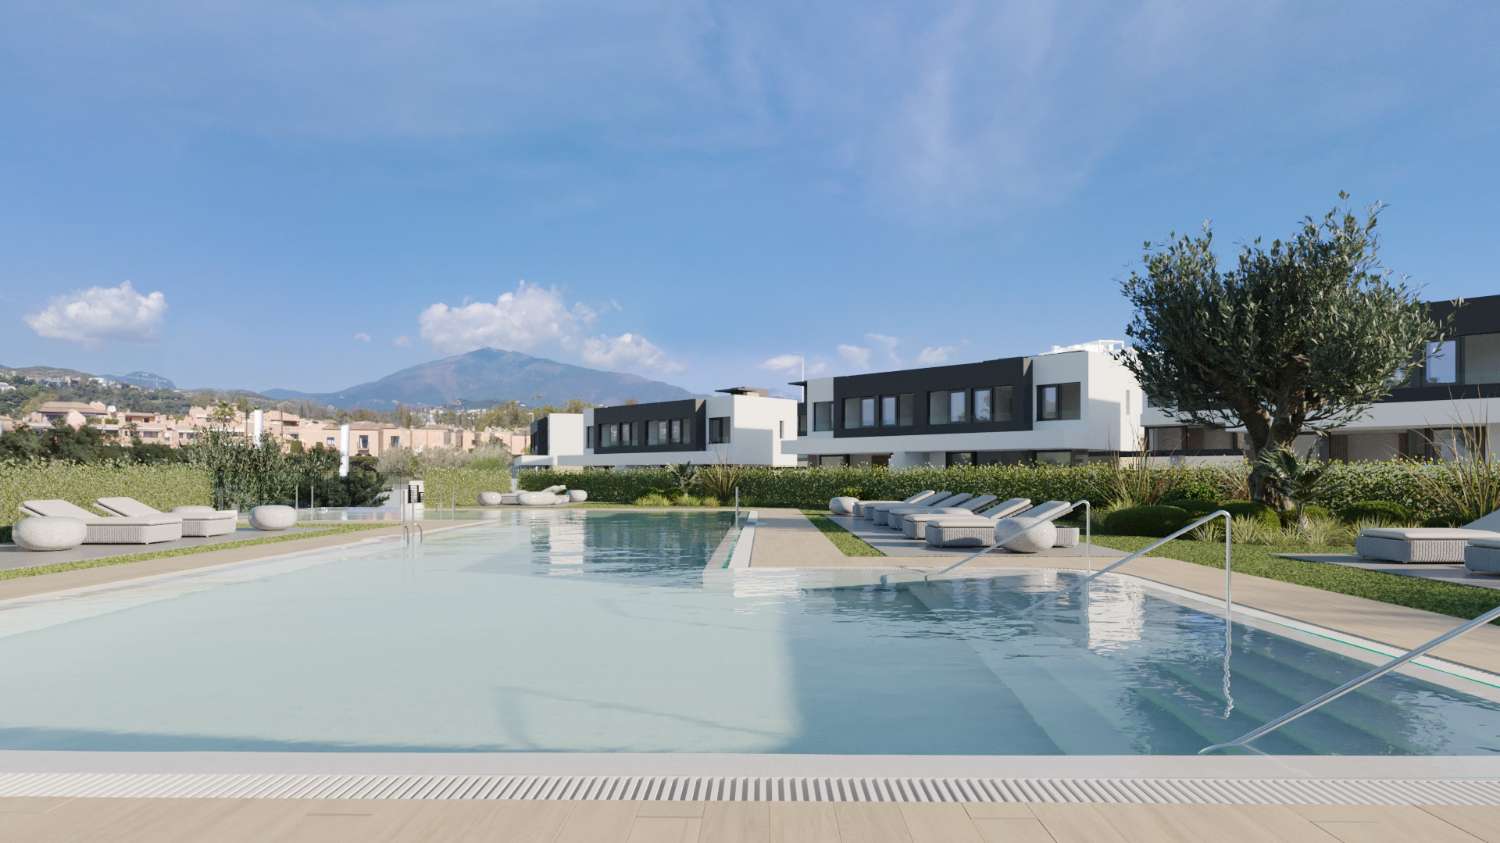 Ambiance romantique ! 50 maisons jumelées neuves à partir de 479 000 euros. Chauffage par le sol. Estepona.